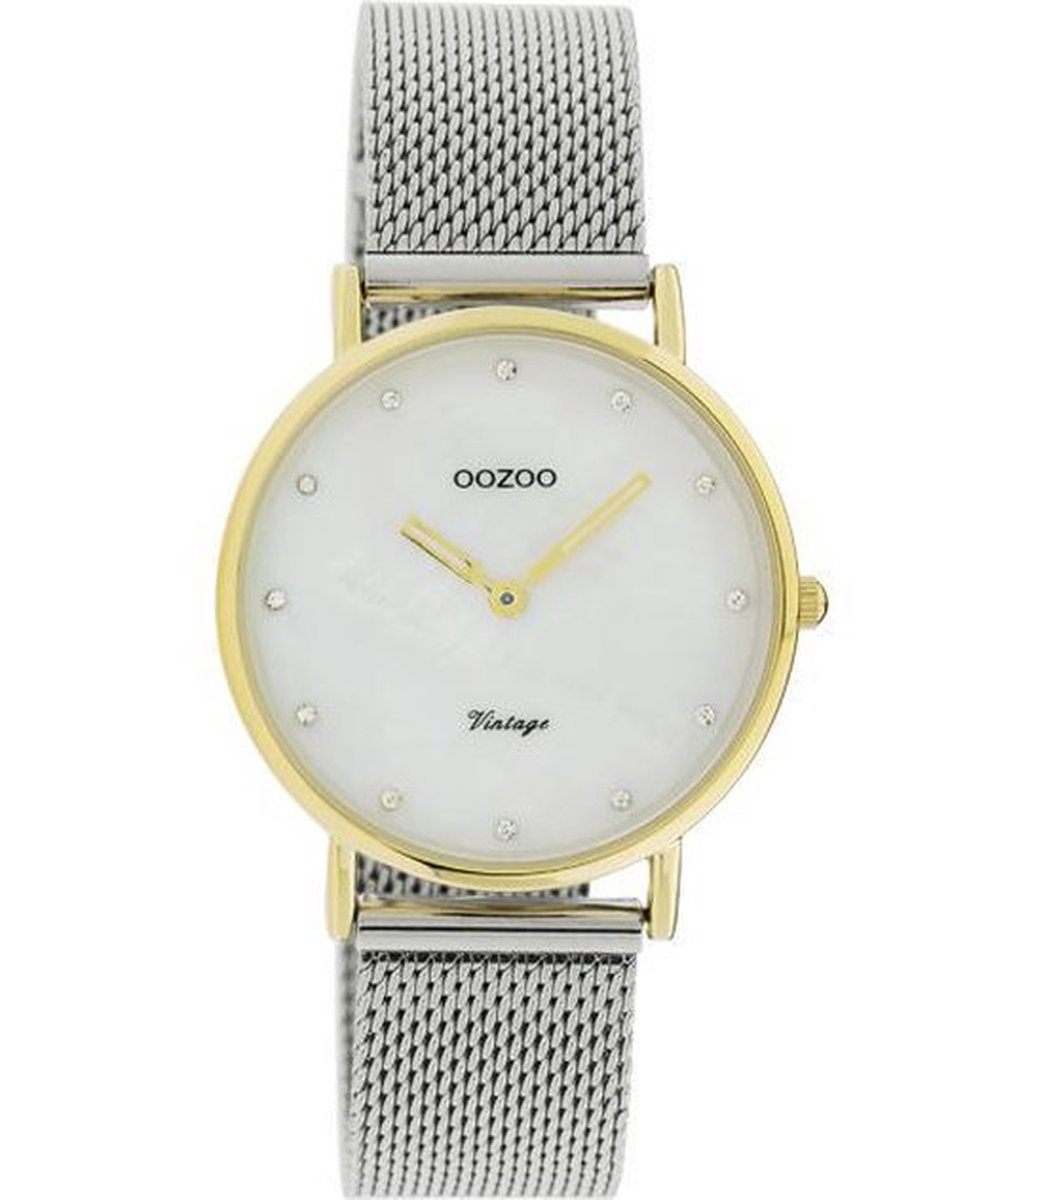 OOZOO Vintage series - Gouden horloge met zilveren metalen mesh armband - C20120 - Ø32